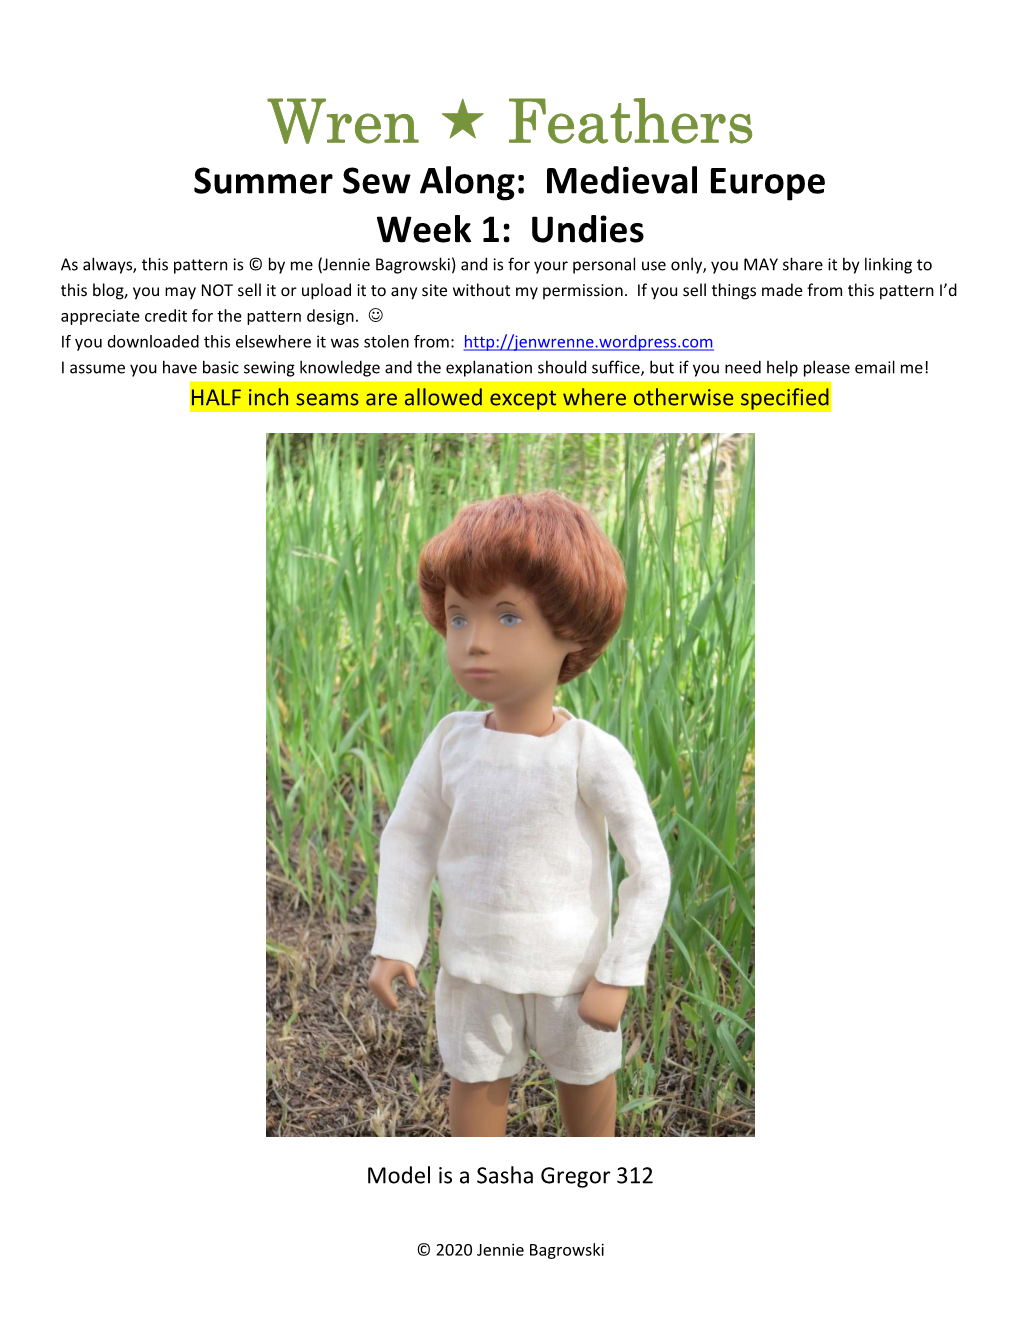 Summer Sew Along: Medieval Europe Week 1: Undies